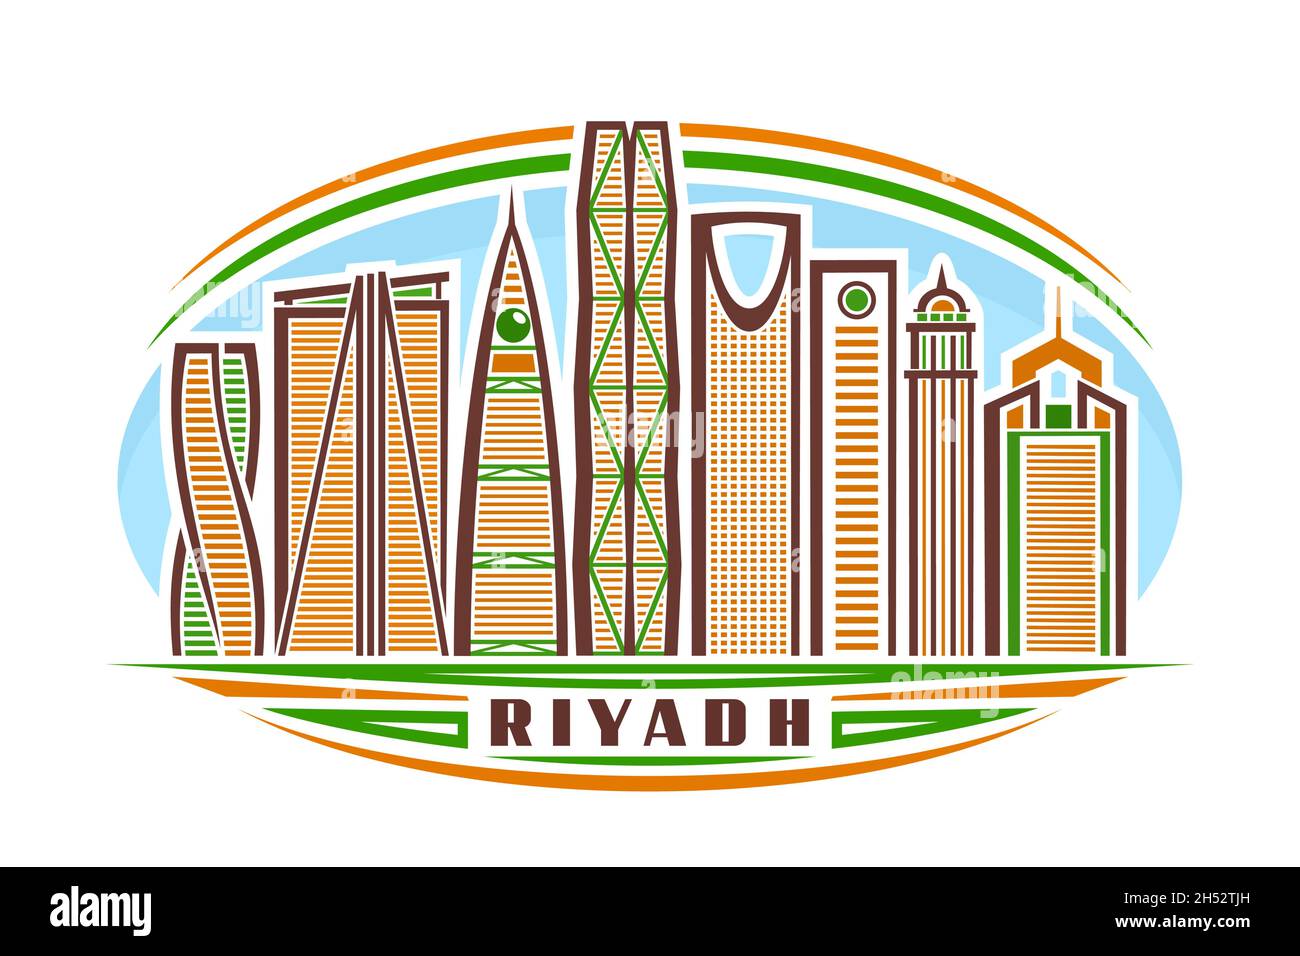 Vektor-Illustration von Riad, horizontales Schild mit linearem Design berühmten riad Stadtbild am Tag Himmel Hintergrund, städtische Linie Kunst Konzept mit decorati Stock Vektor